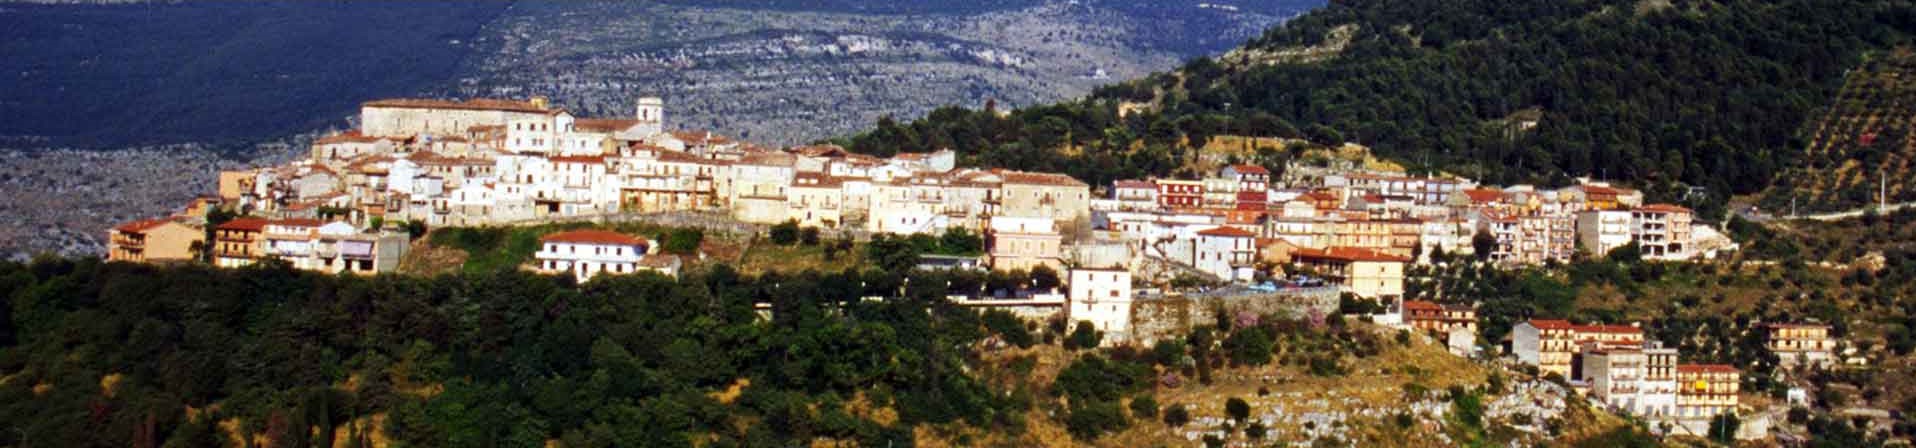 Municipality of Roccasecca dei Volsci